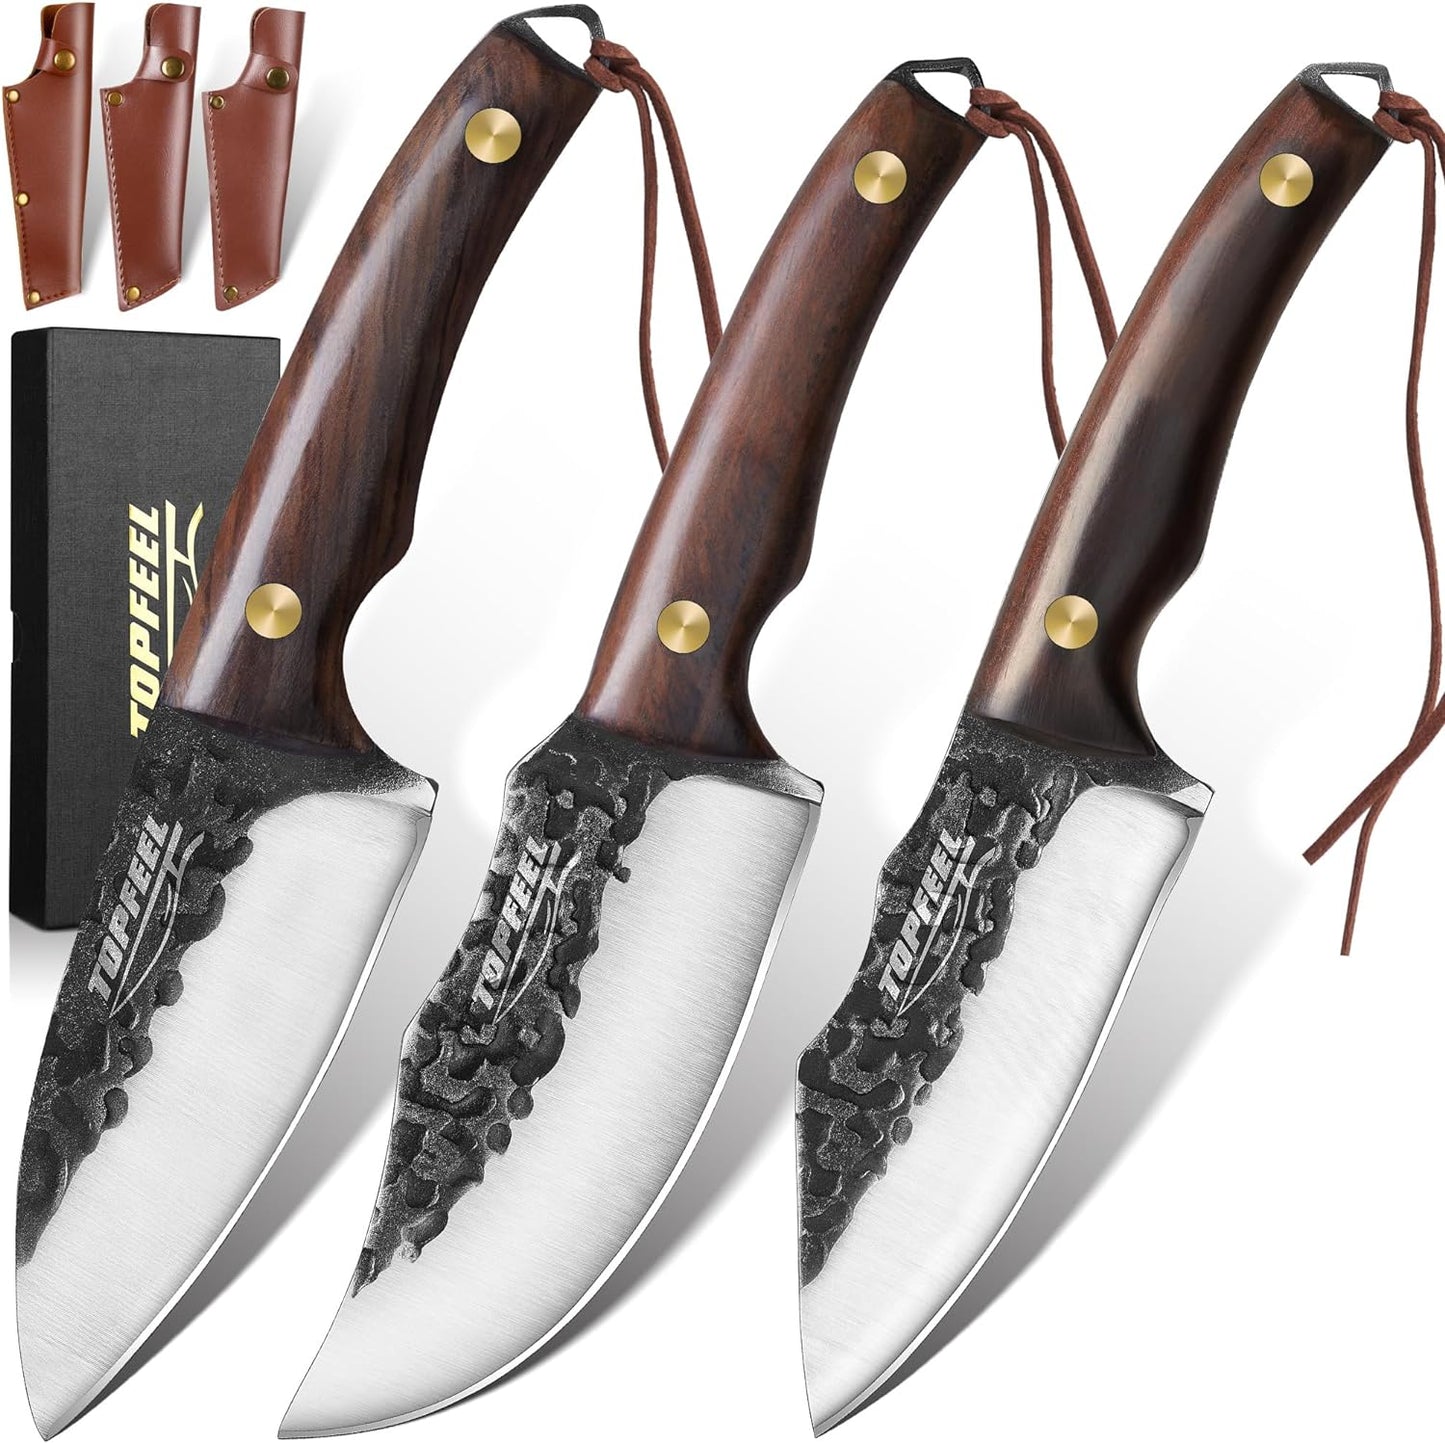 KD Hand Forged Butcher Knife Set Boning  Slicing Knife Home Kitchen & Outdoor